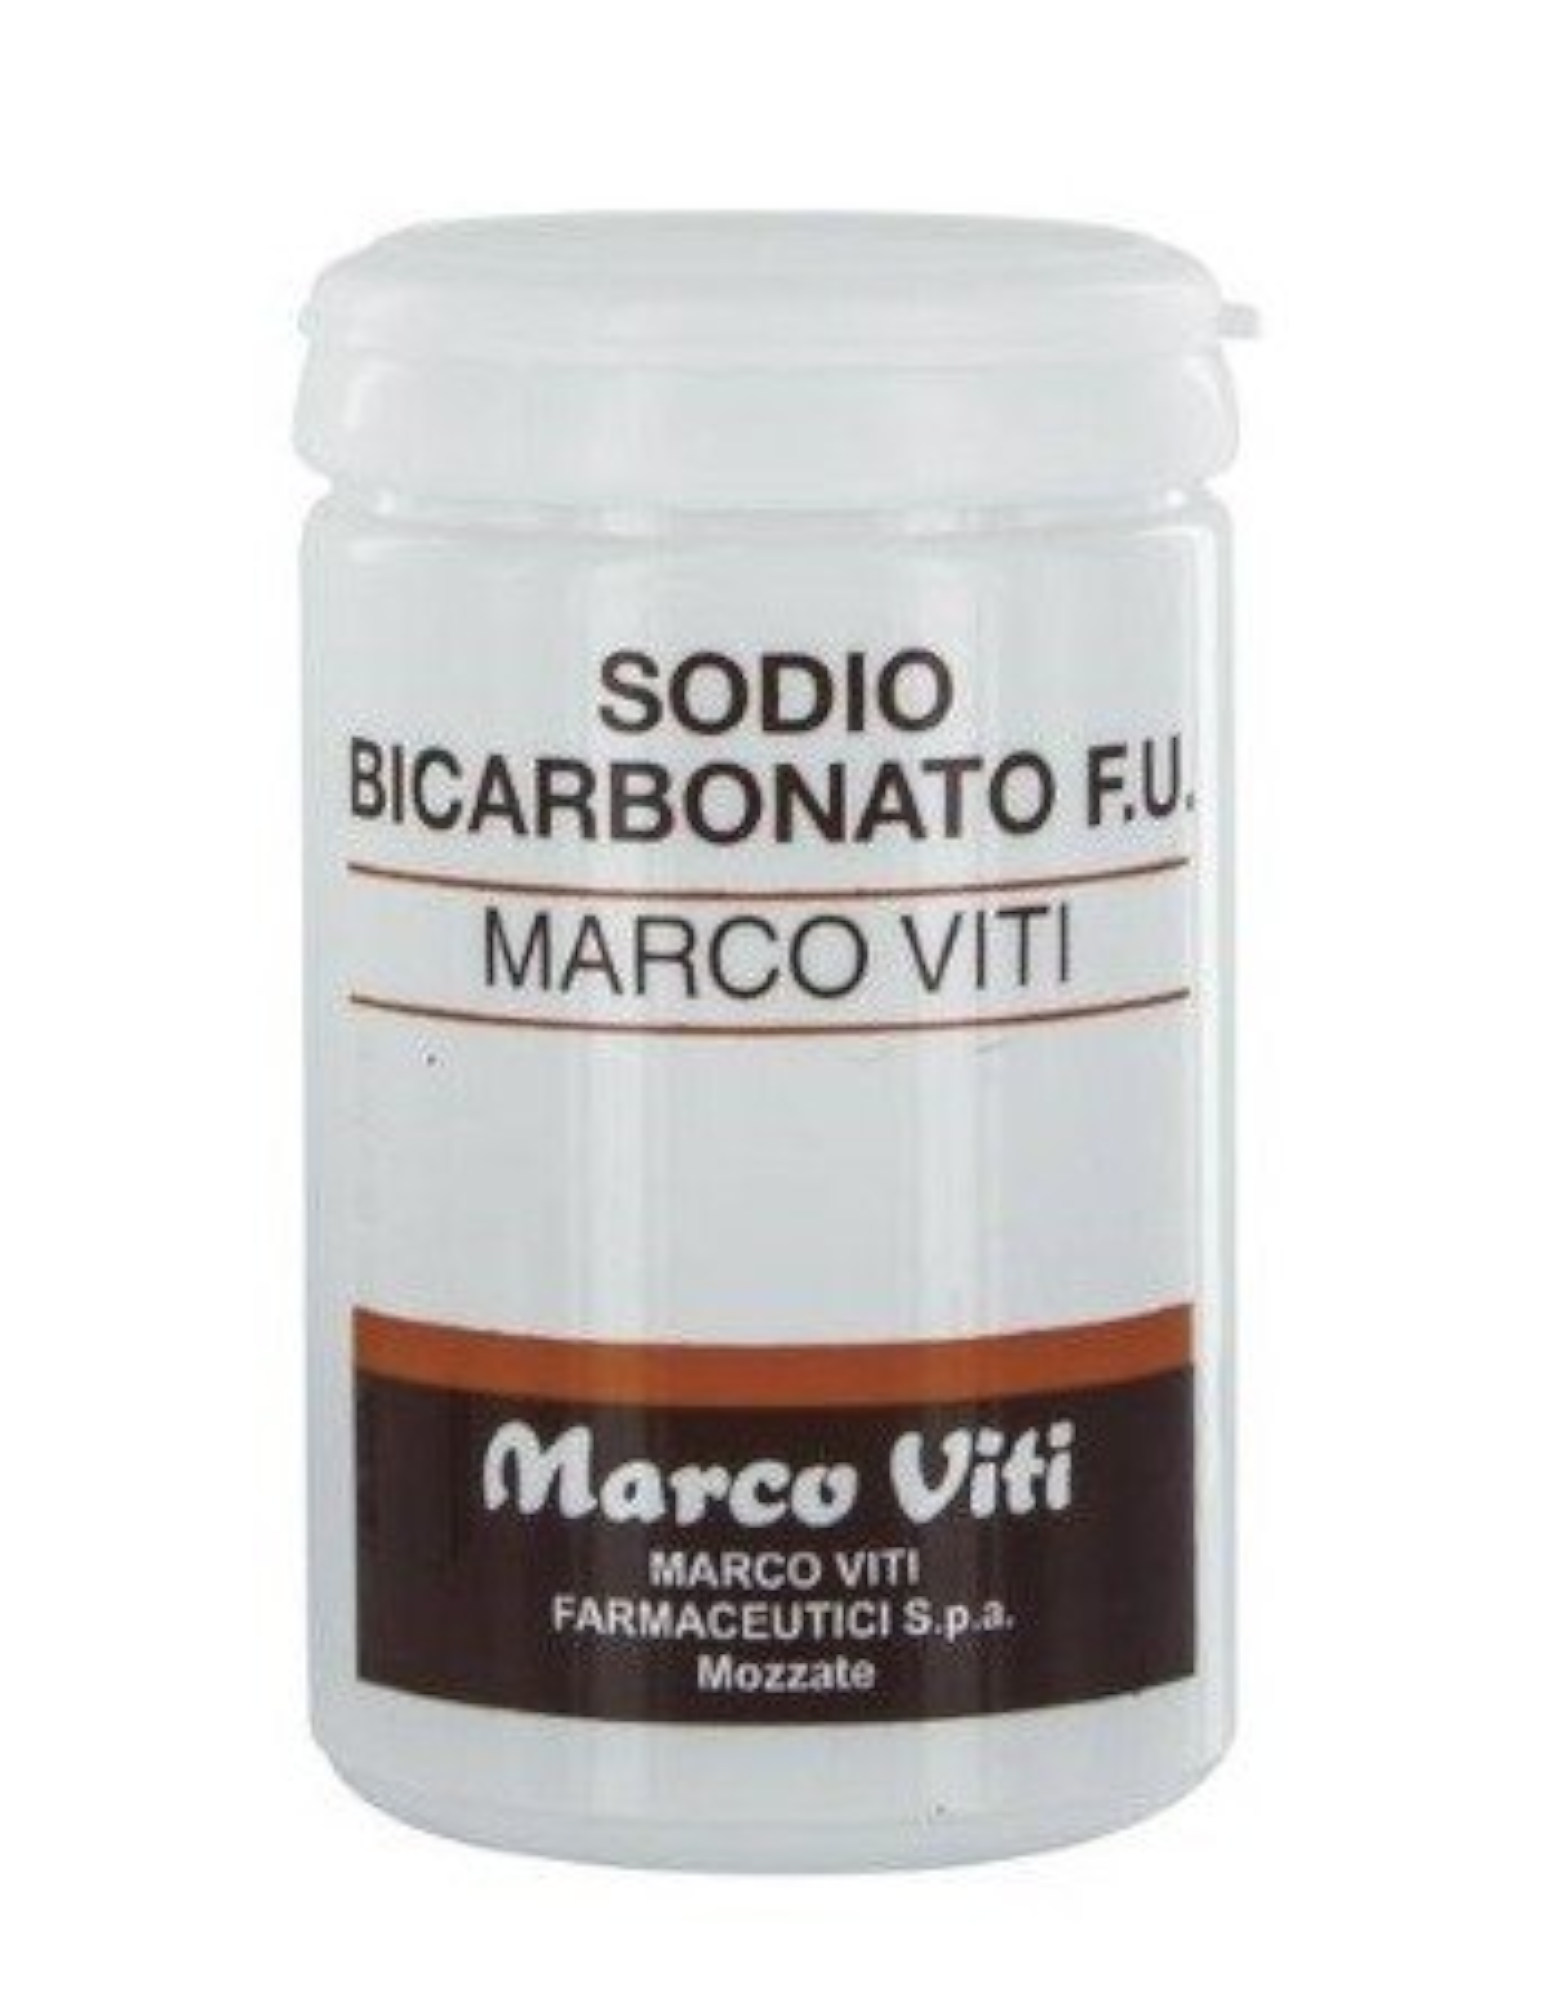 Favorita Drogal Bicarbonato Reviews